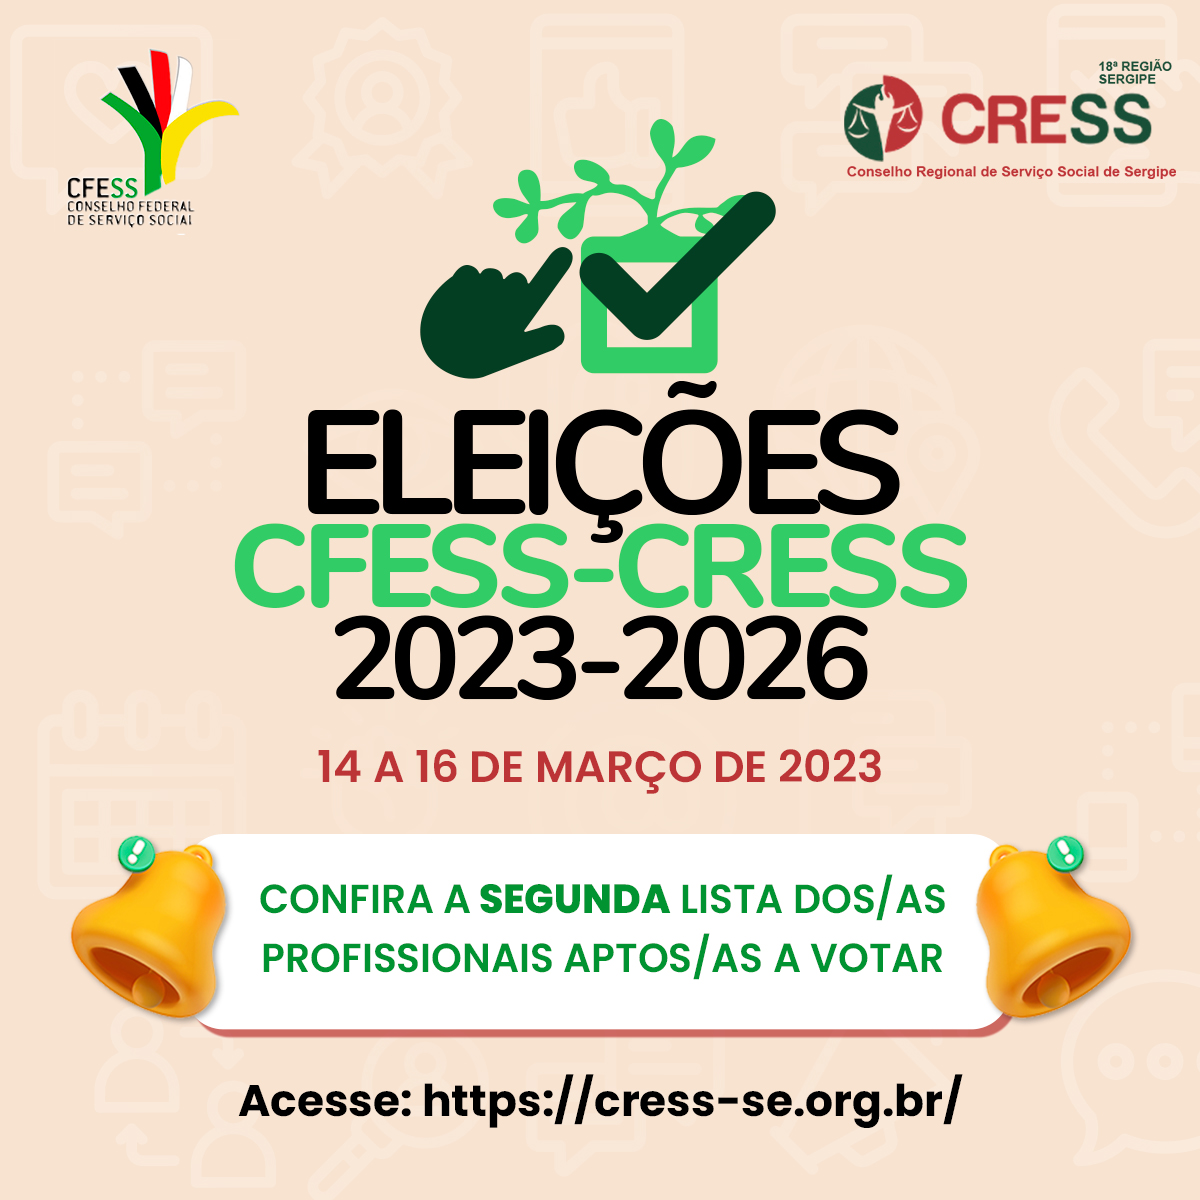 ️Eleições CFESS-CRESS: CRESS-SE divulga segunda lista de profissionais aptos/as a votar